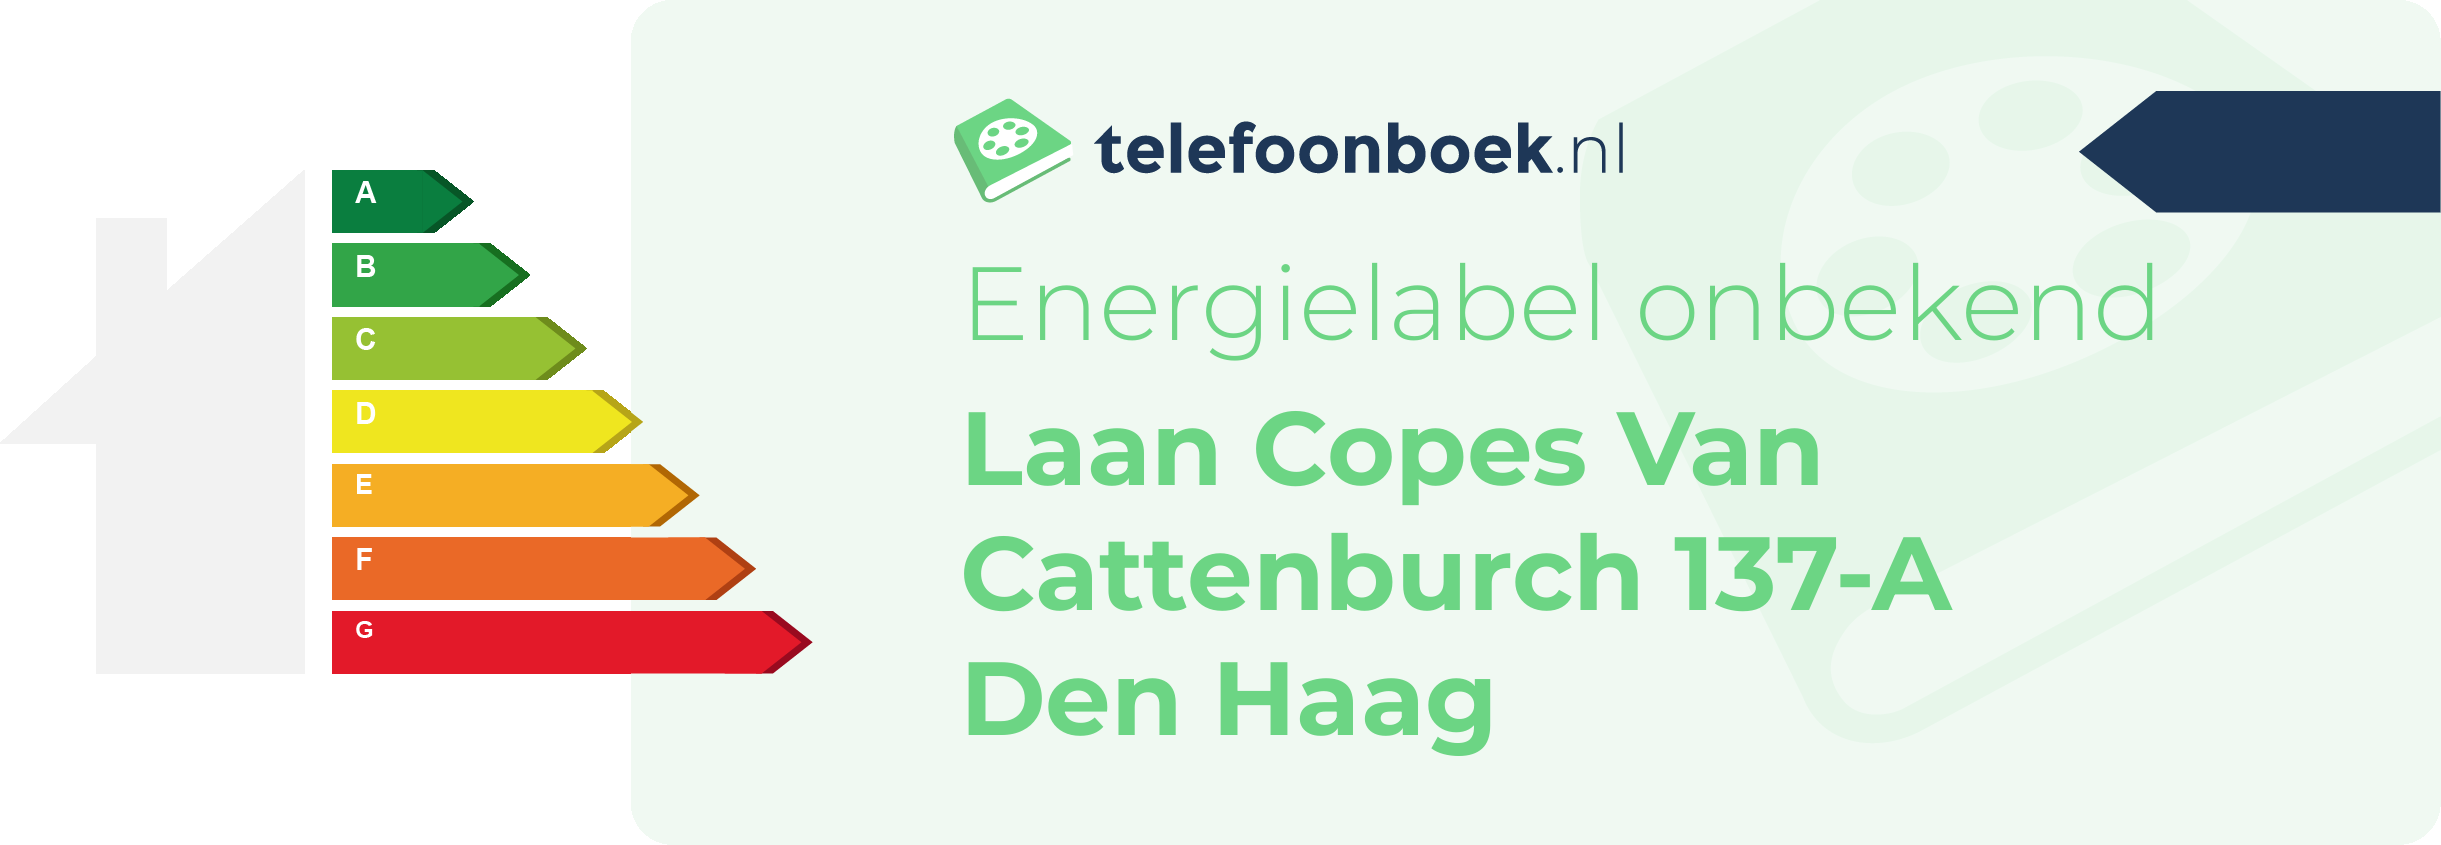 Energielabel Laan Copes Van Cattenburch 137-A Den Haag